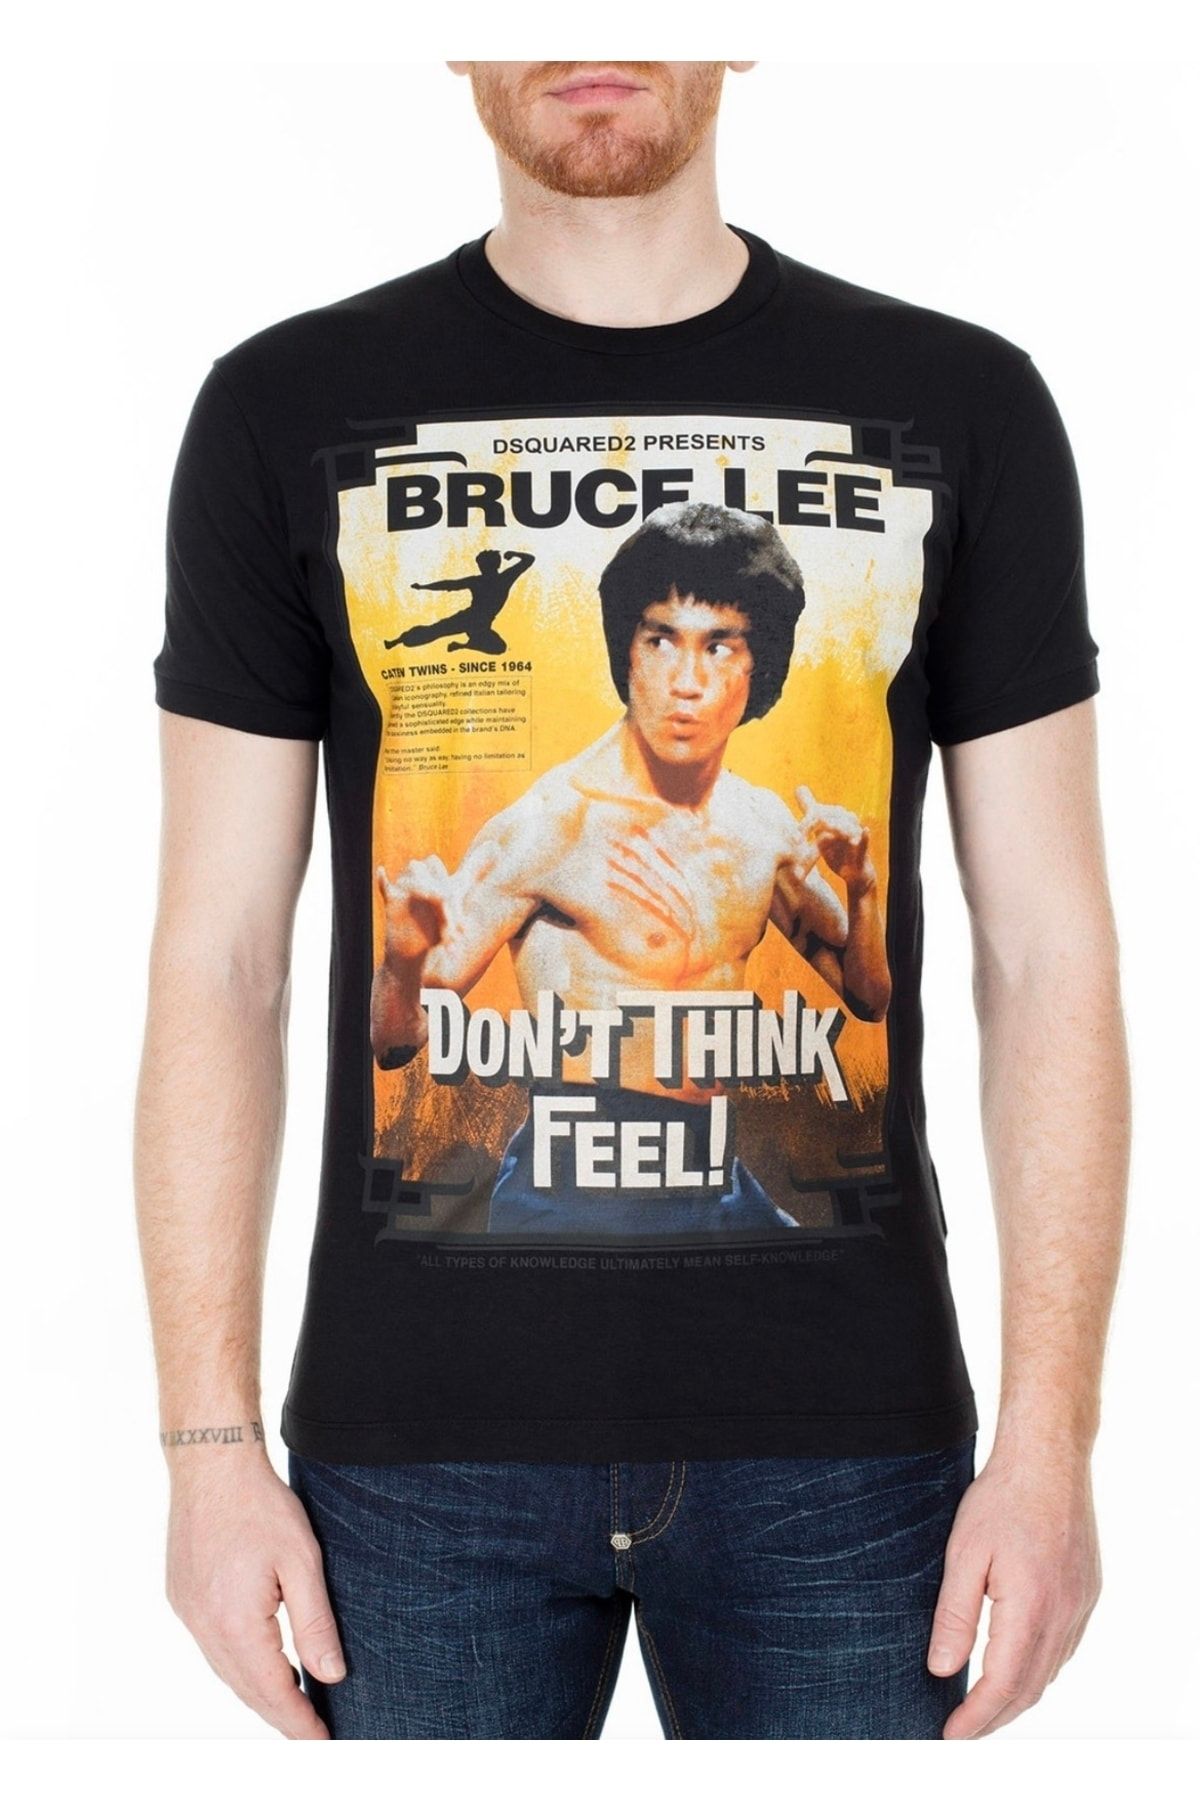 DSquared2 Bruce Lee Print T-shirt